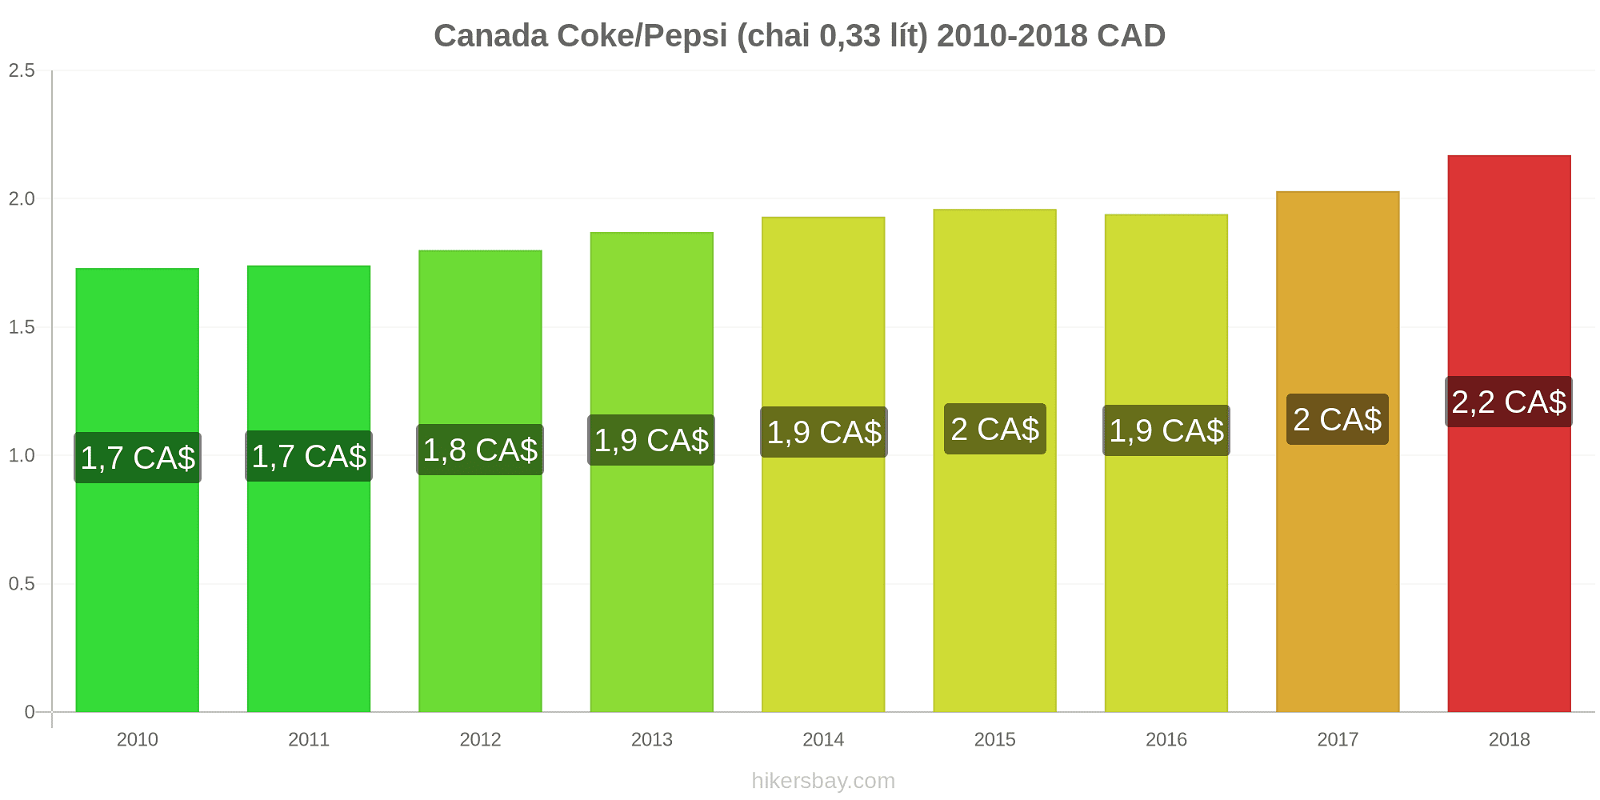 Canada thay đổi giá cả Coca-Cola/Pepsi (chai 0.33 lít) hikersbay.com